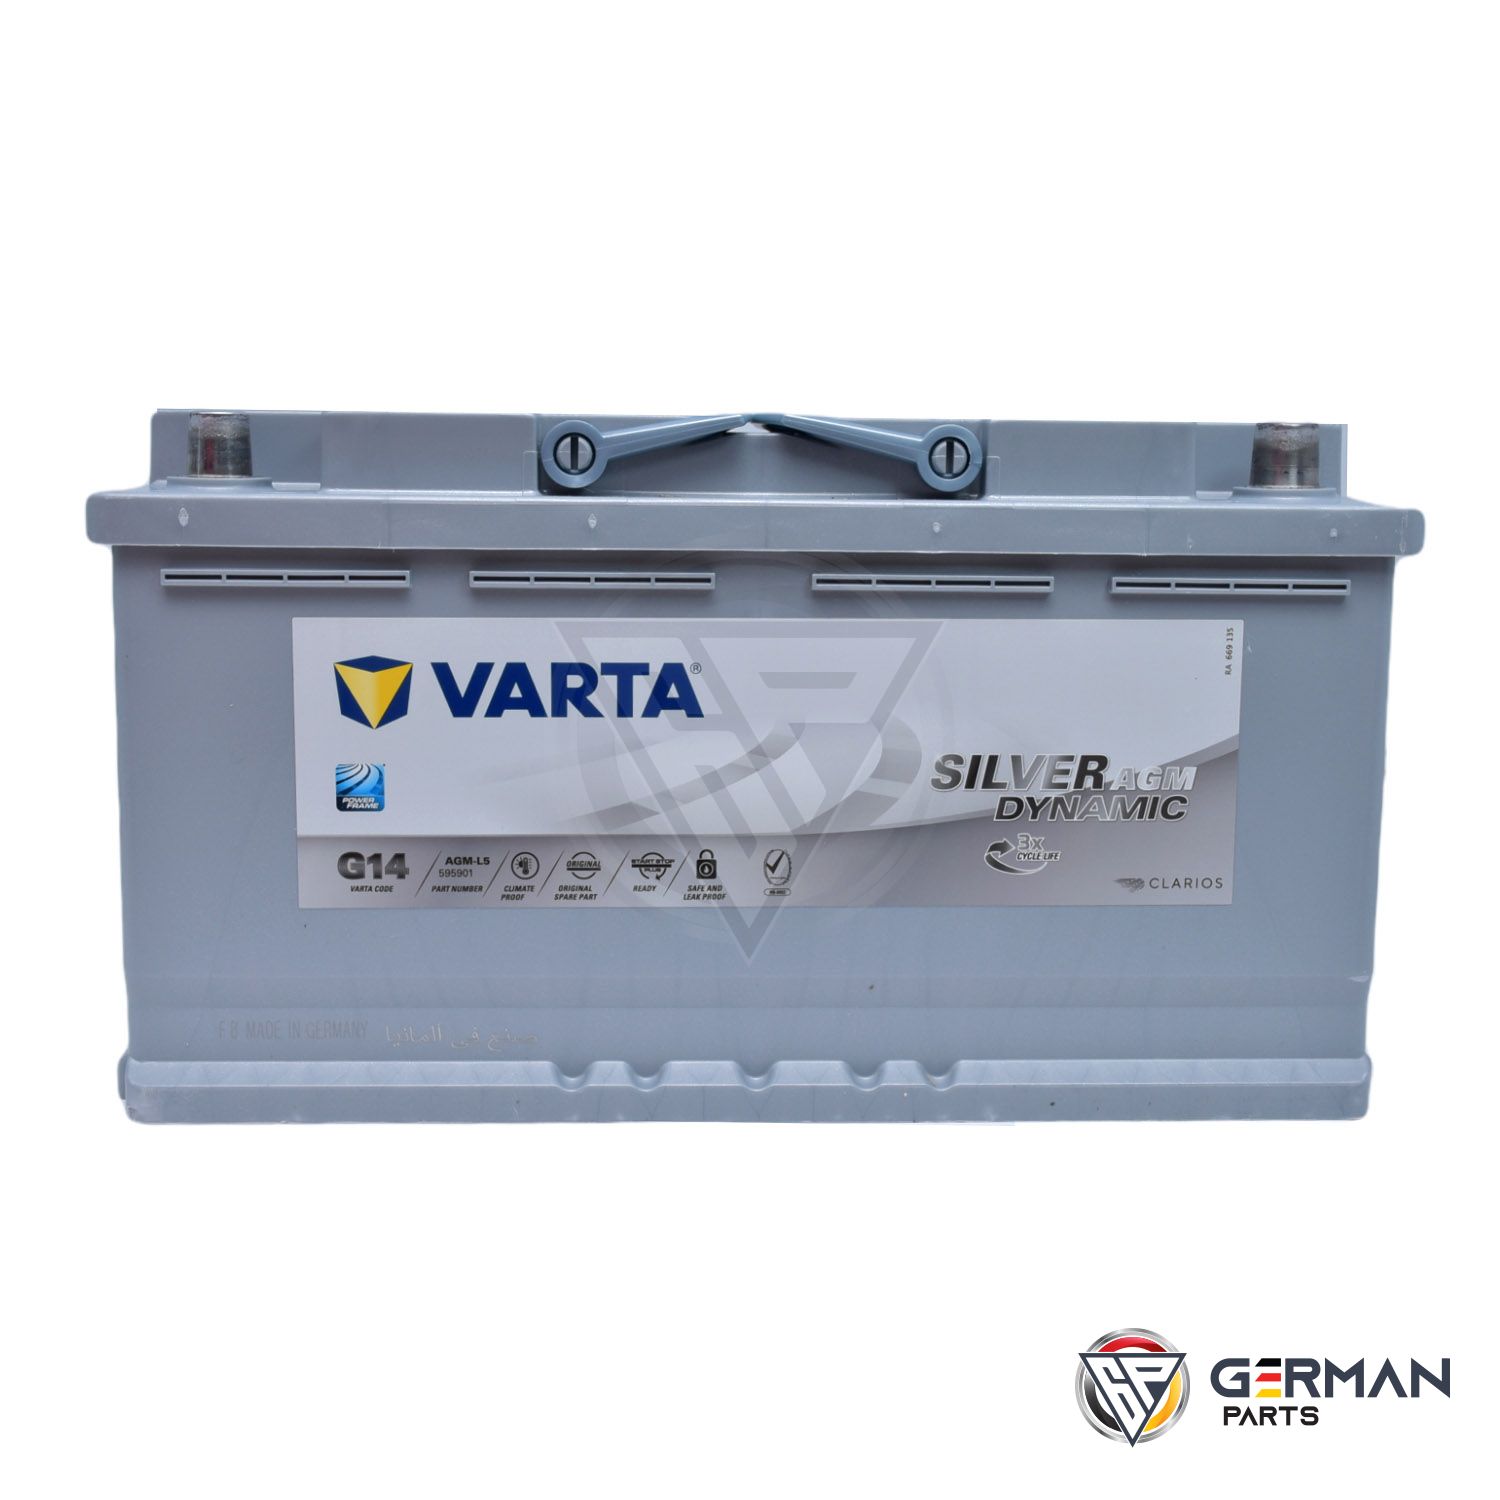 Til ære for modtagende Forbrydelse Buy Varta Battery 95 Ah Agm Varta DIN595901MFV-G14 - German Parts